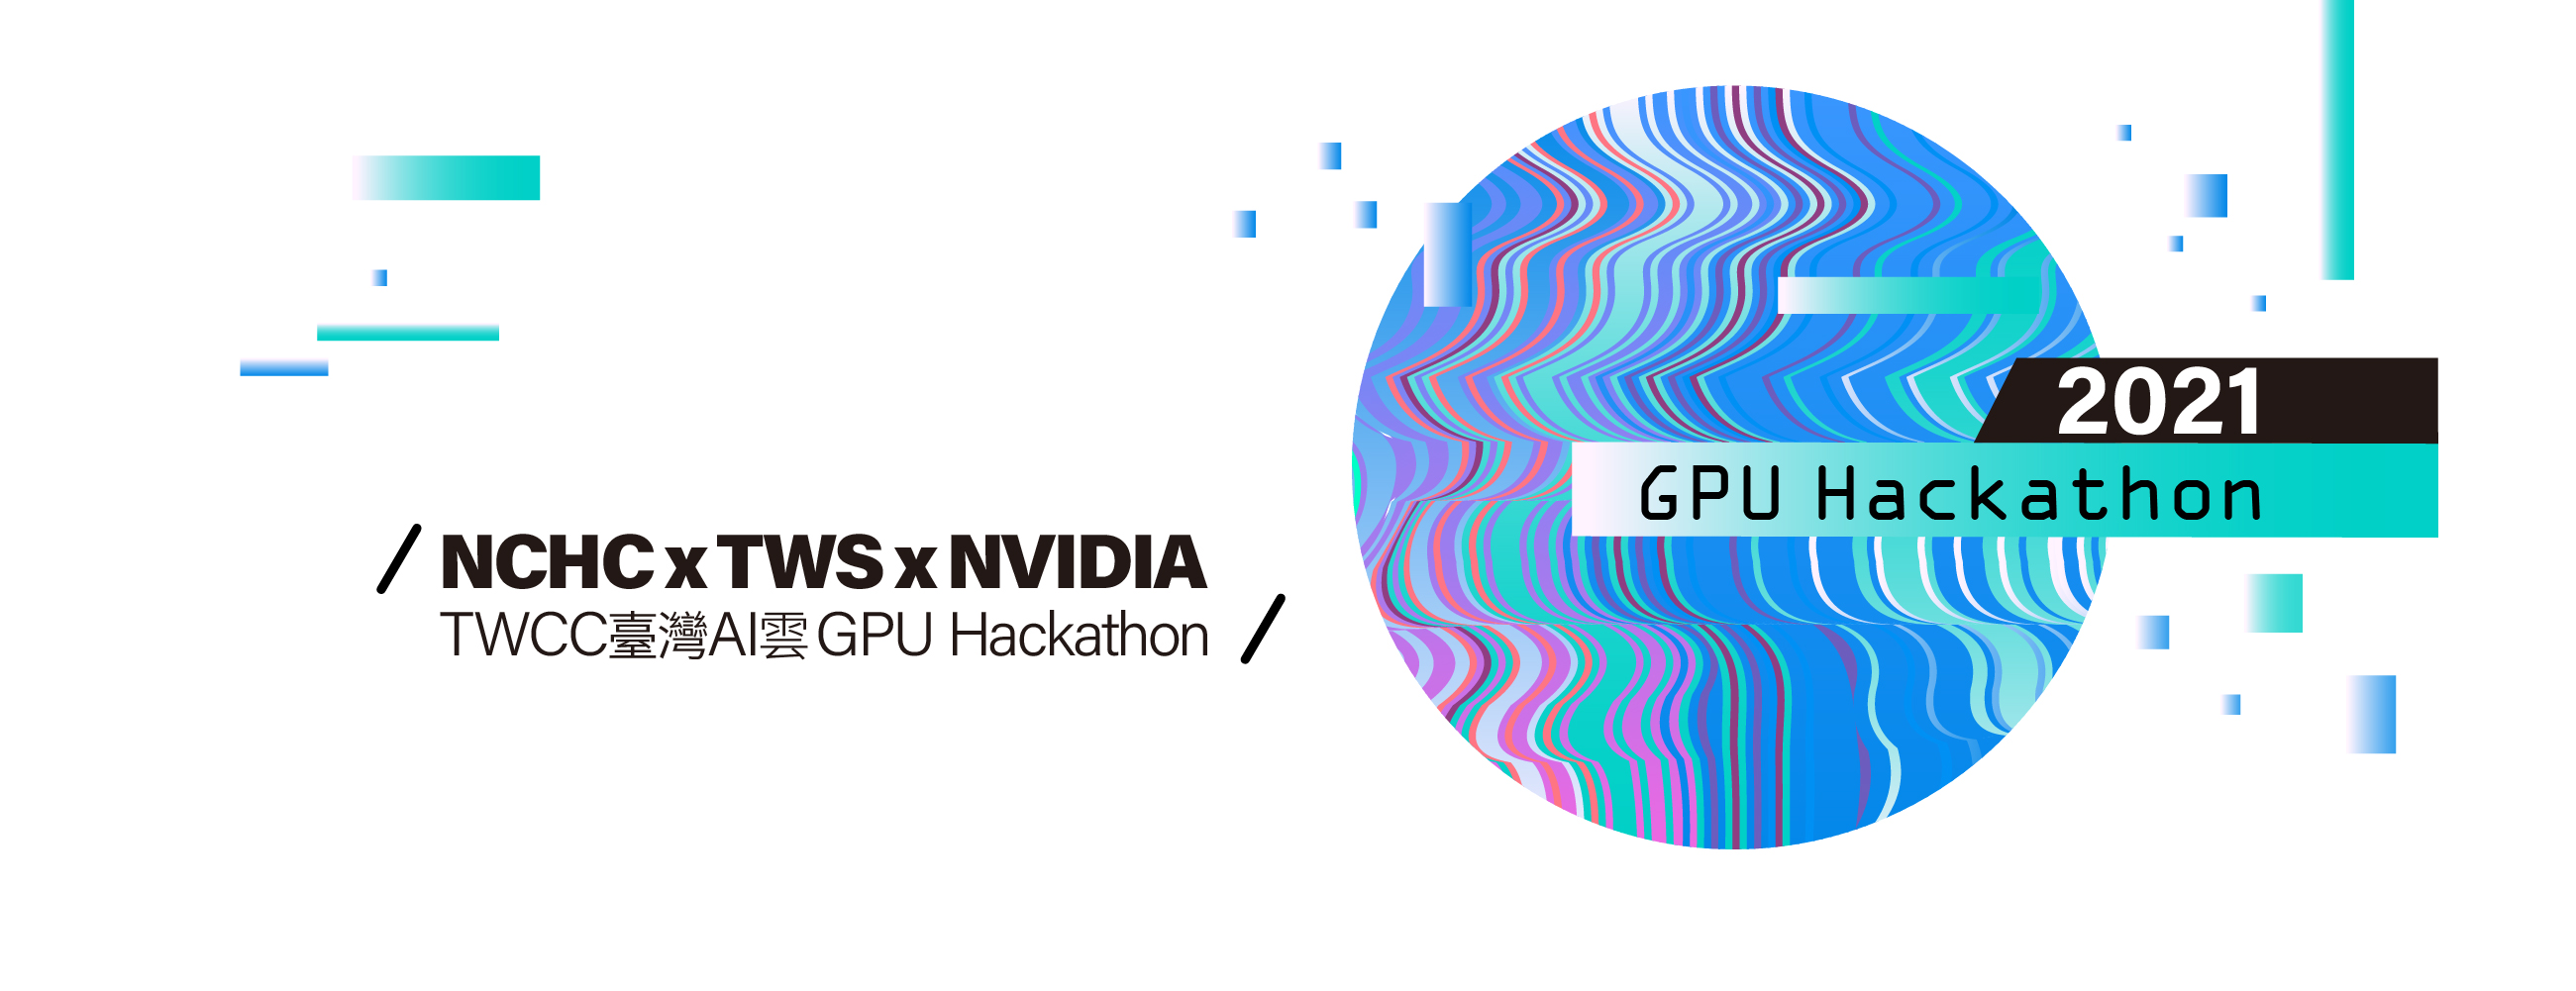 TWCC 臺灣AI 雲GPU Hackathon 2021